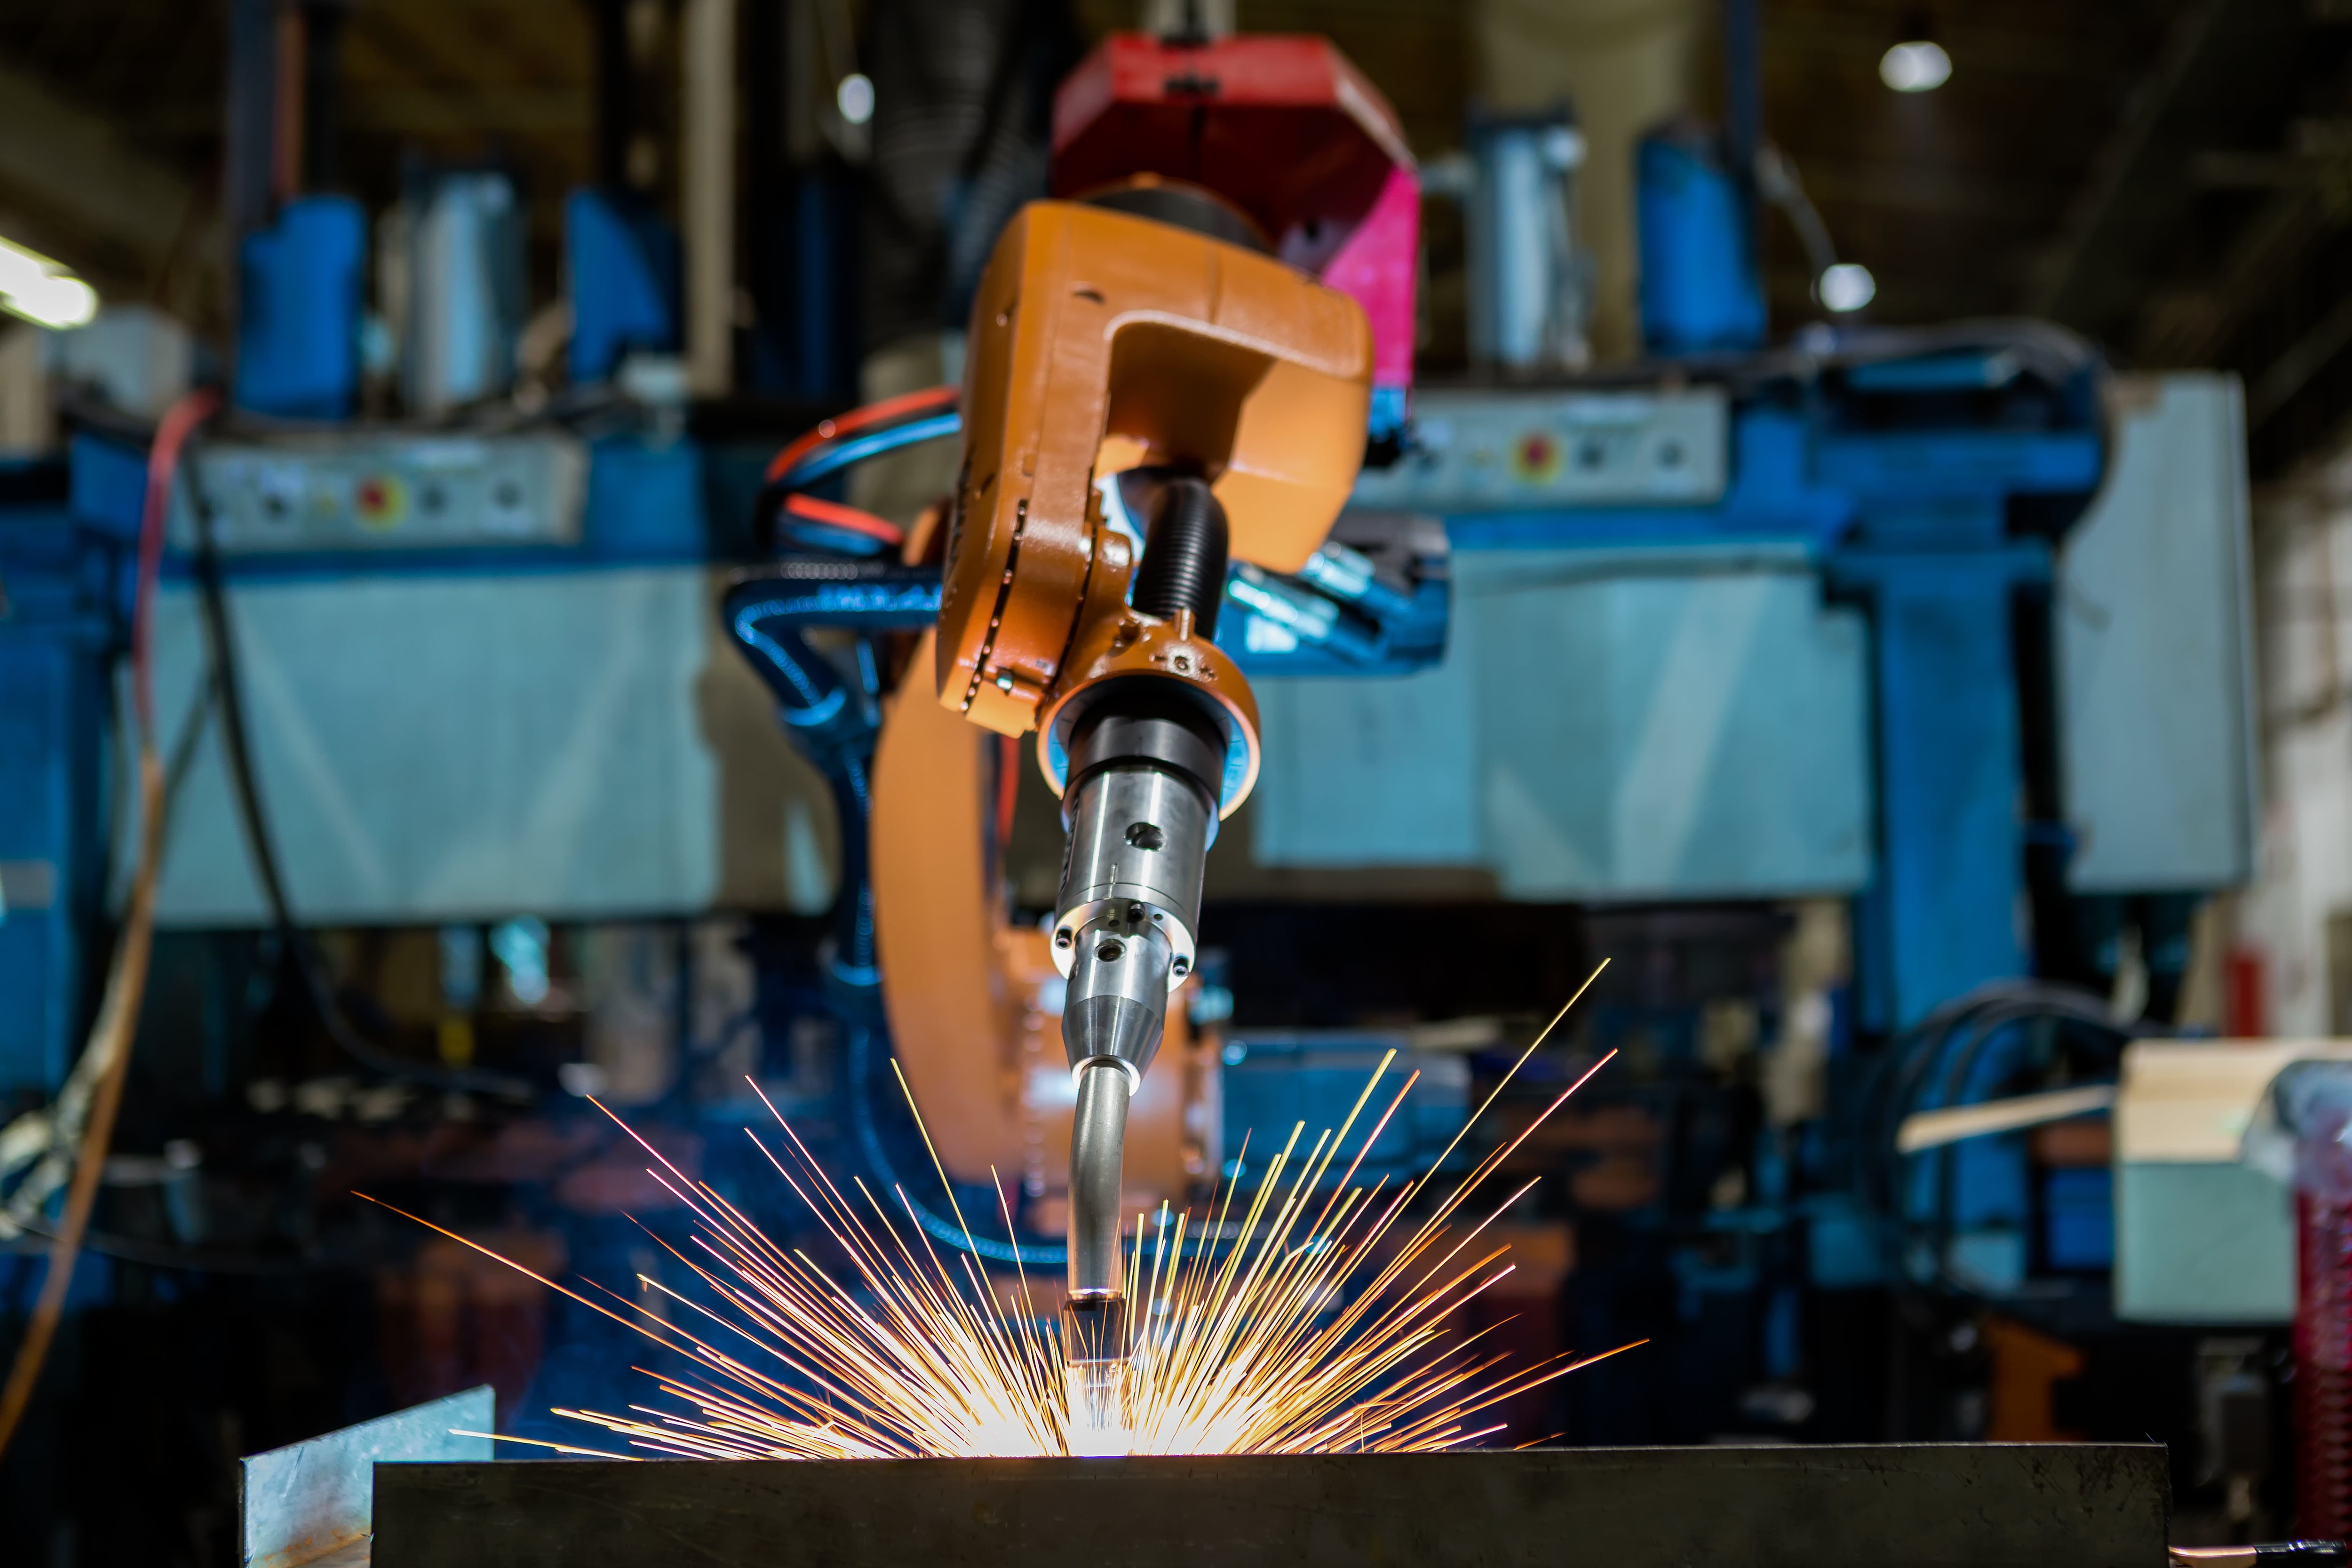 Industrial Welding Robot